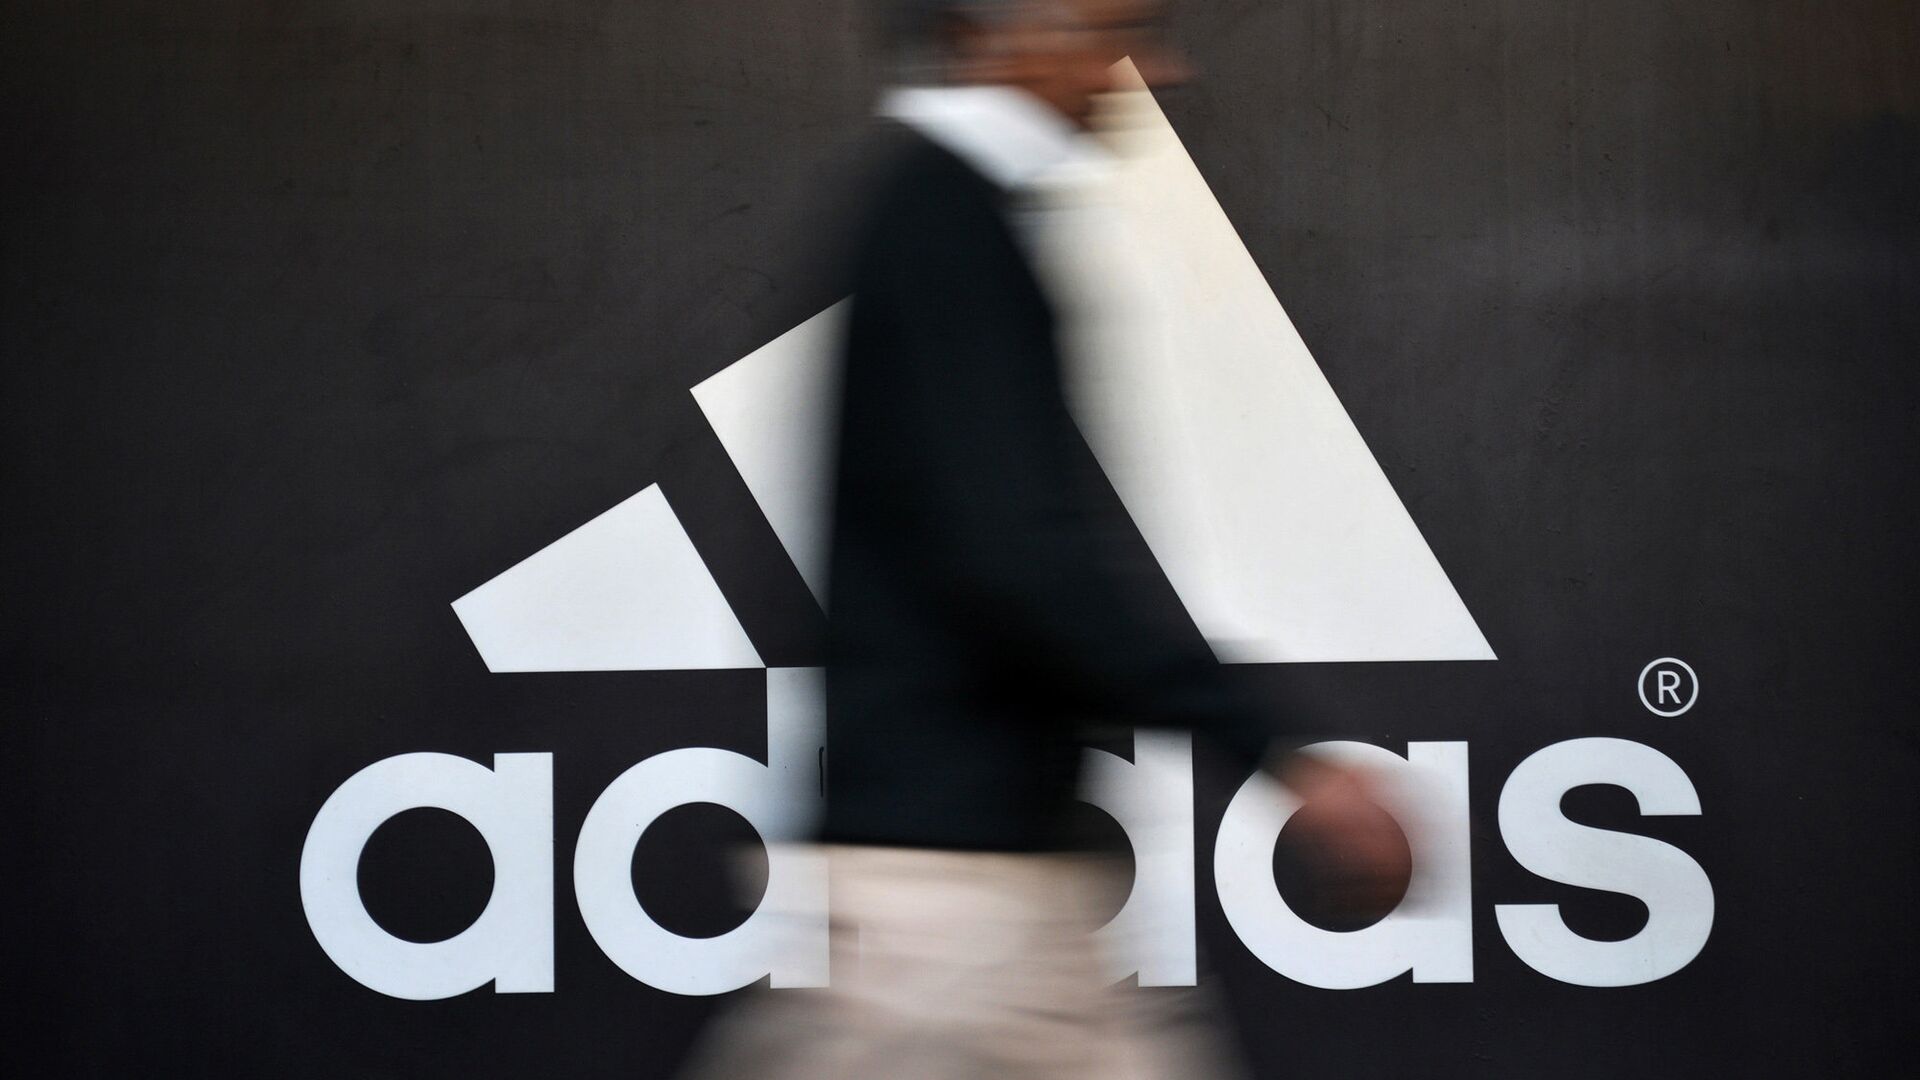 СМИ: Adidas рассматривает продажу бренда Reebok